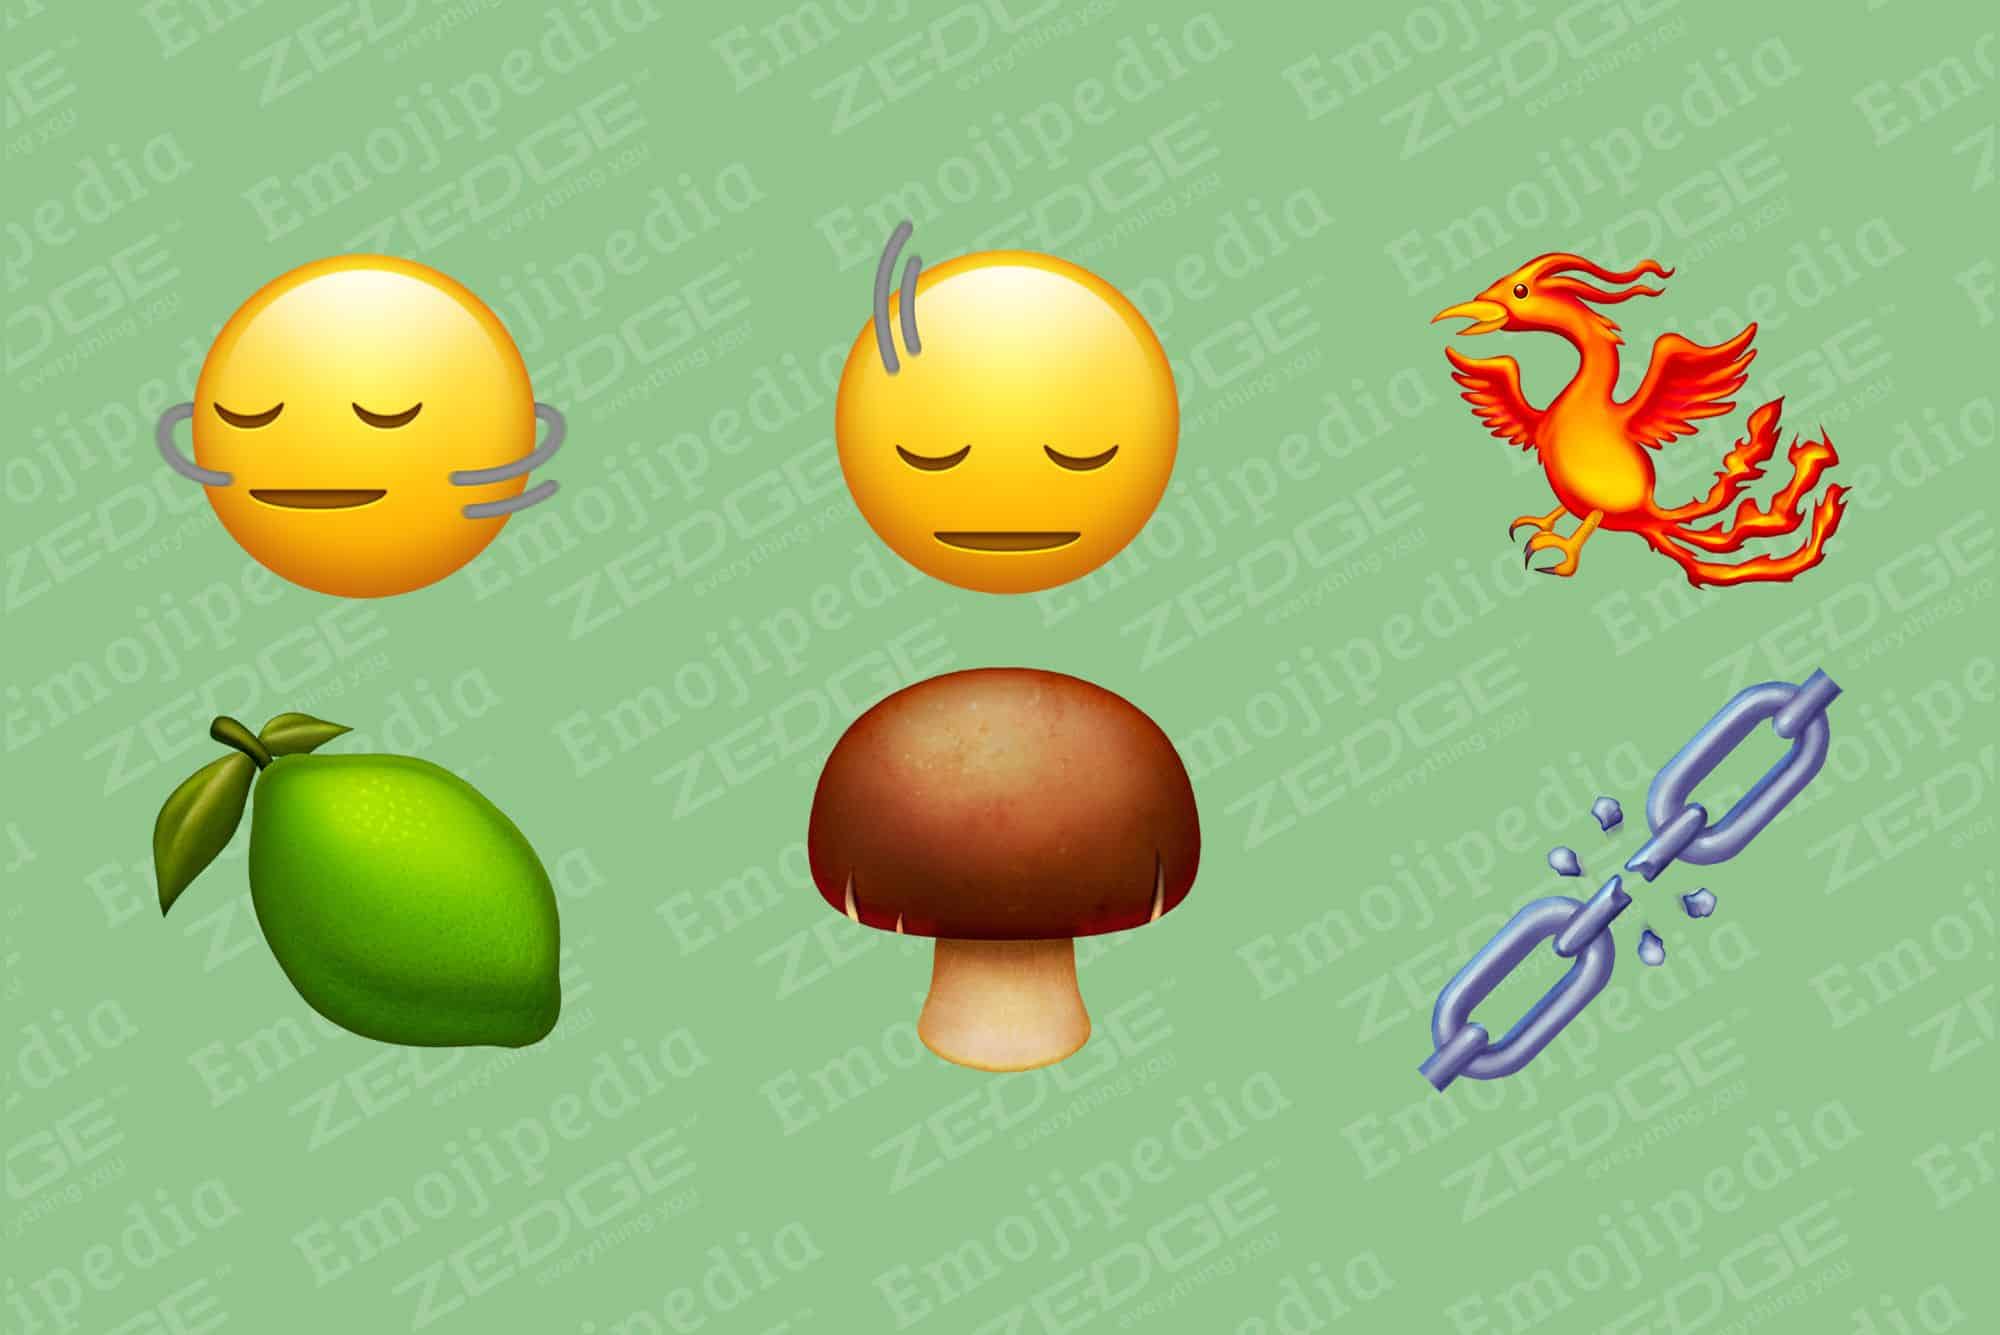 Novos emojis do Emoji 15.1